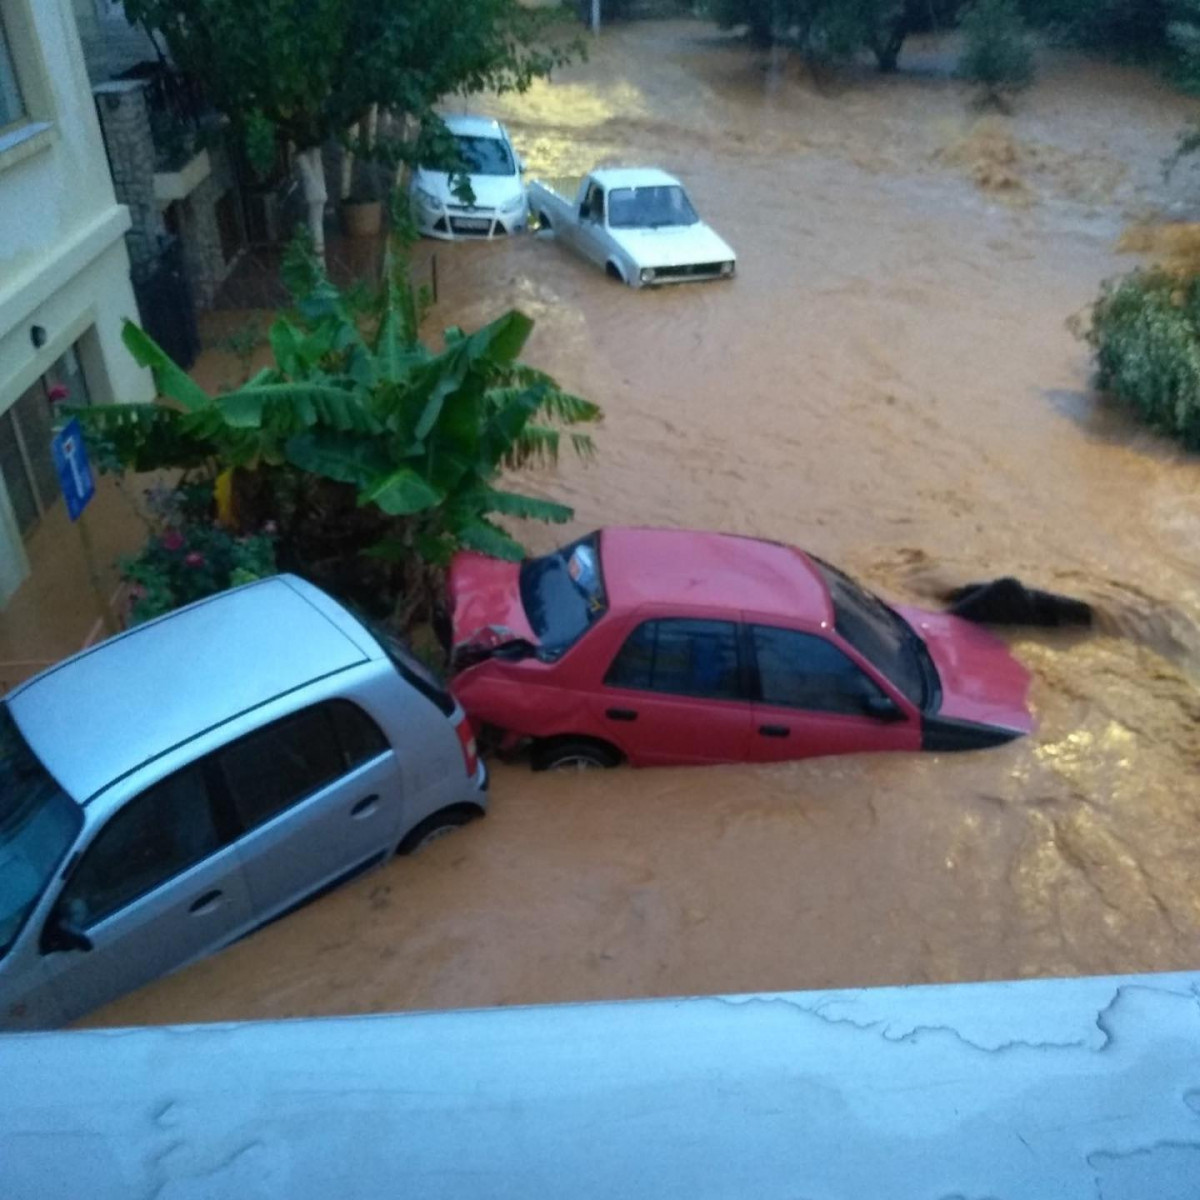 Καιρός: Πνίγηκε ξανά η Κρήτη από τις πλημμύρες, ανέβηκαν στις ταράτσες οι άνθρωποι για να σωθούν (vid)